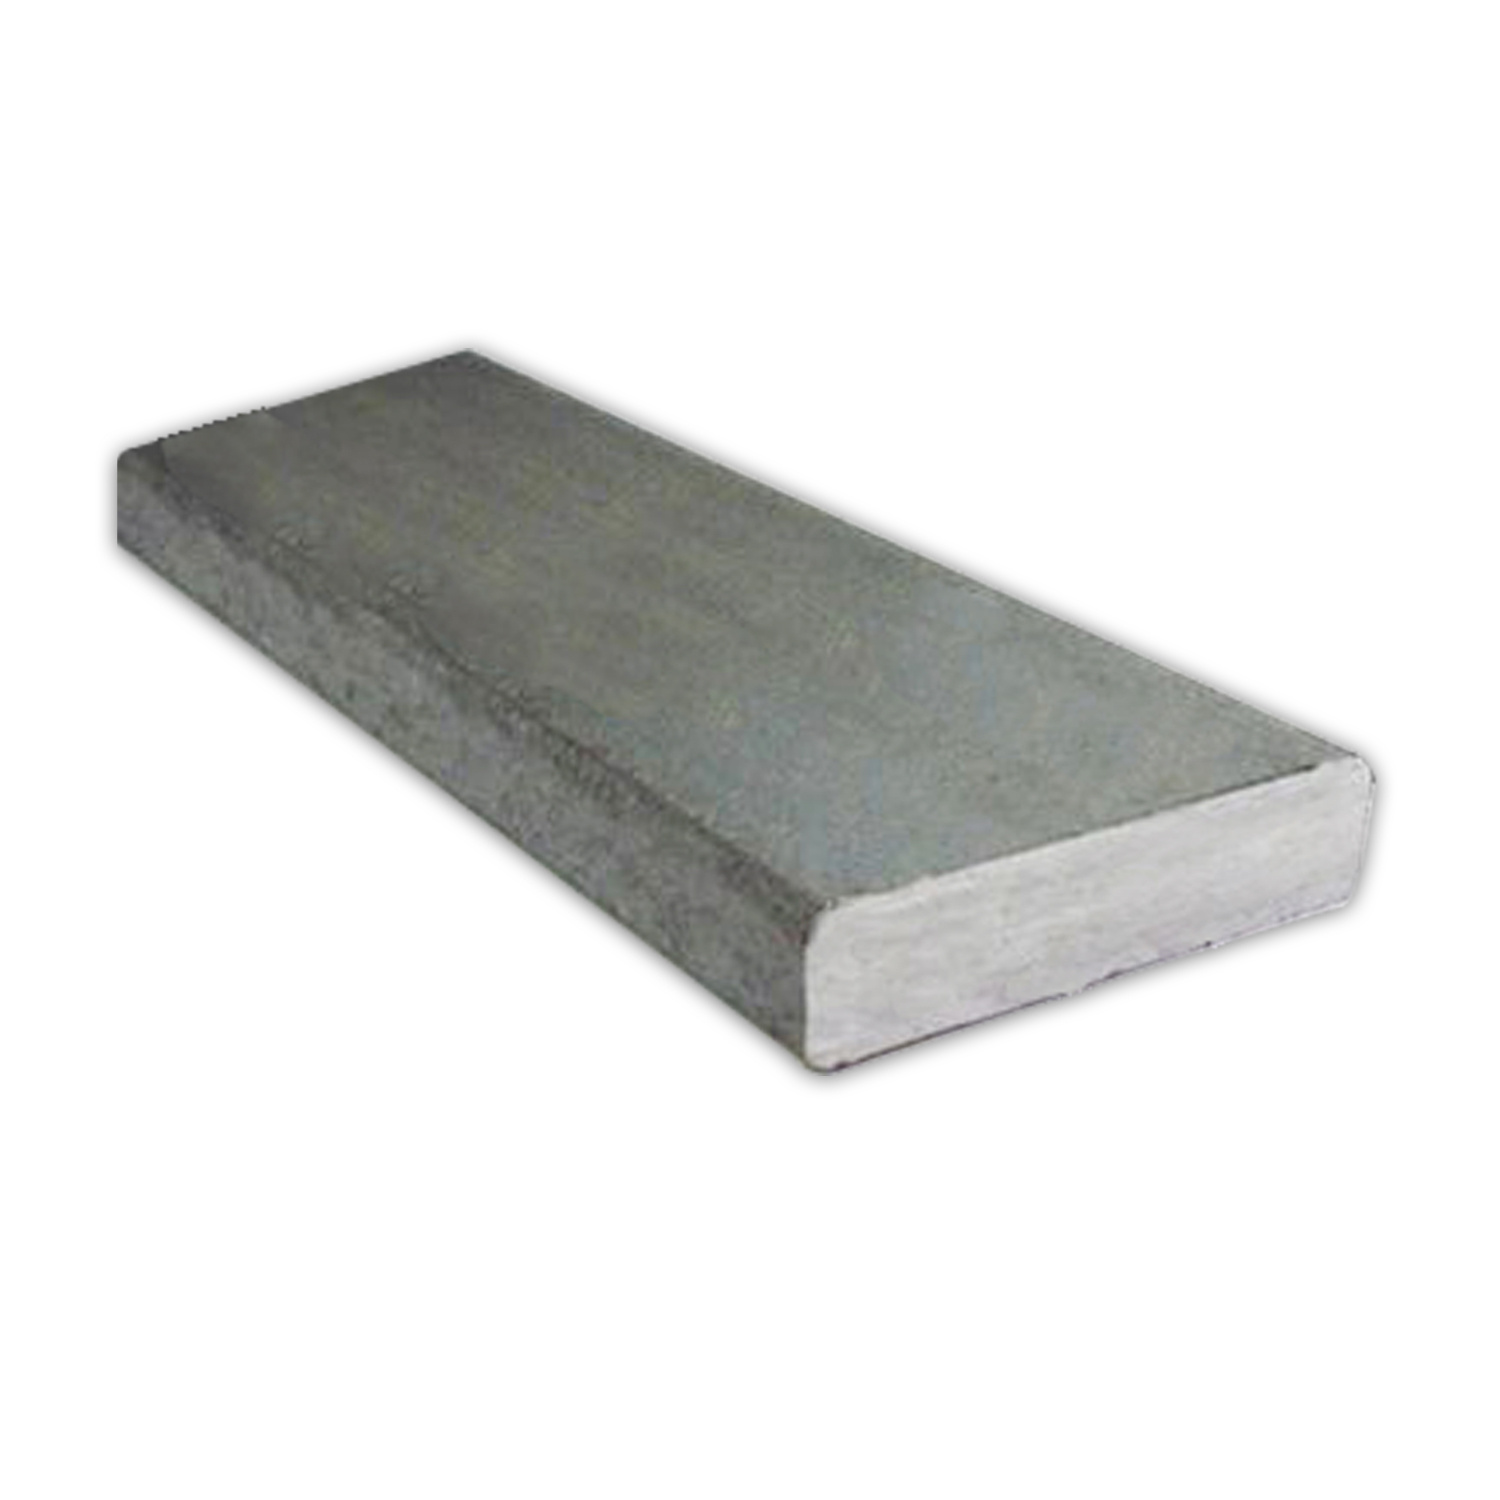 Steel Matting 4.5mm 4 X 8' (2x2 Hole) - Tacloban Ultrasteel